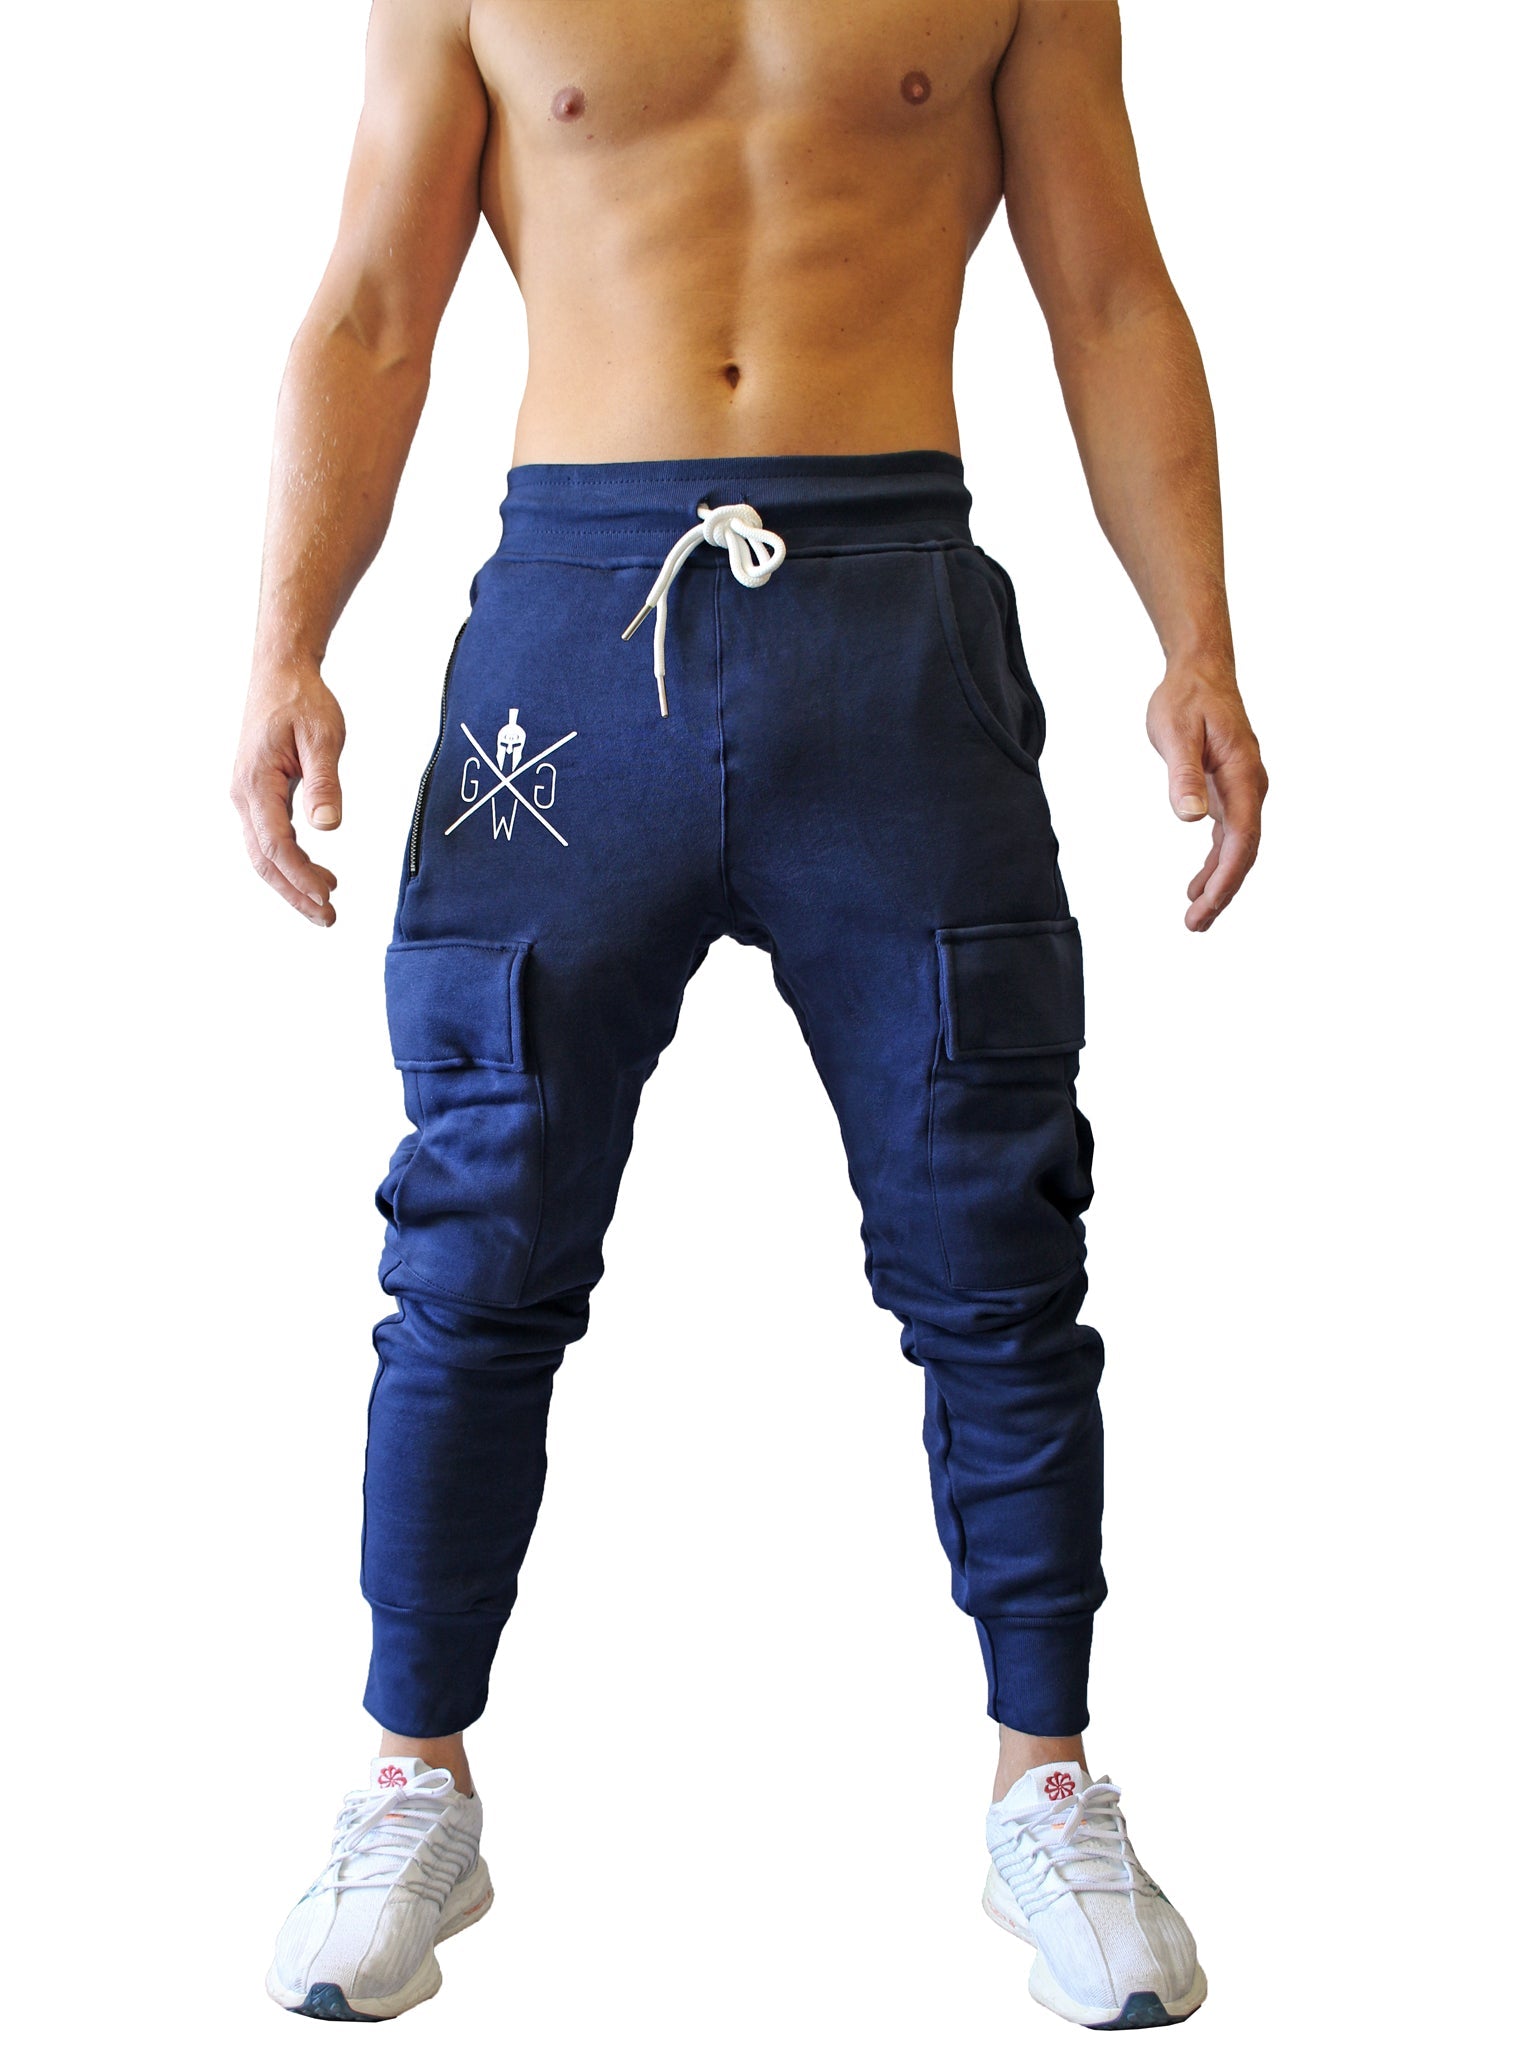 Athletisches Design der Gym Generation Cargo Gym Pants in Navy, mit stilvollem Spartaner-Logo und Saum an den Knöcheln.